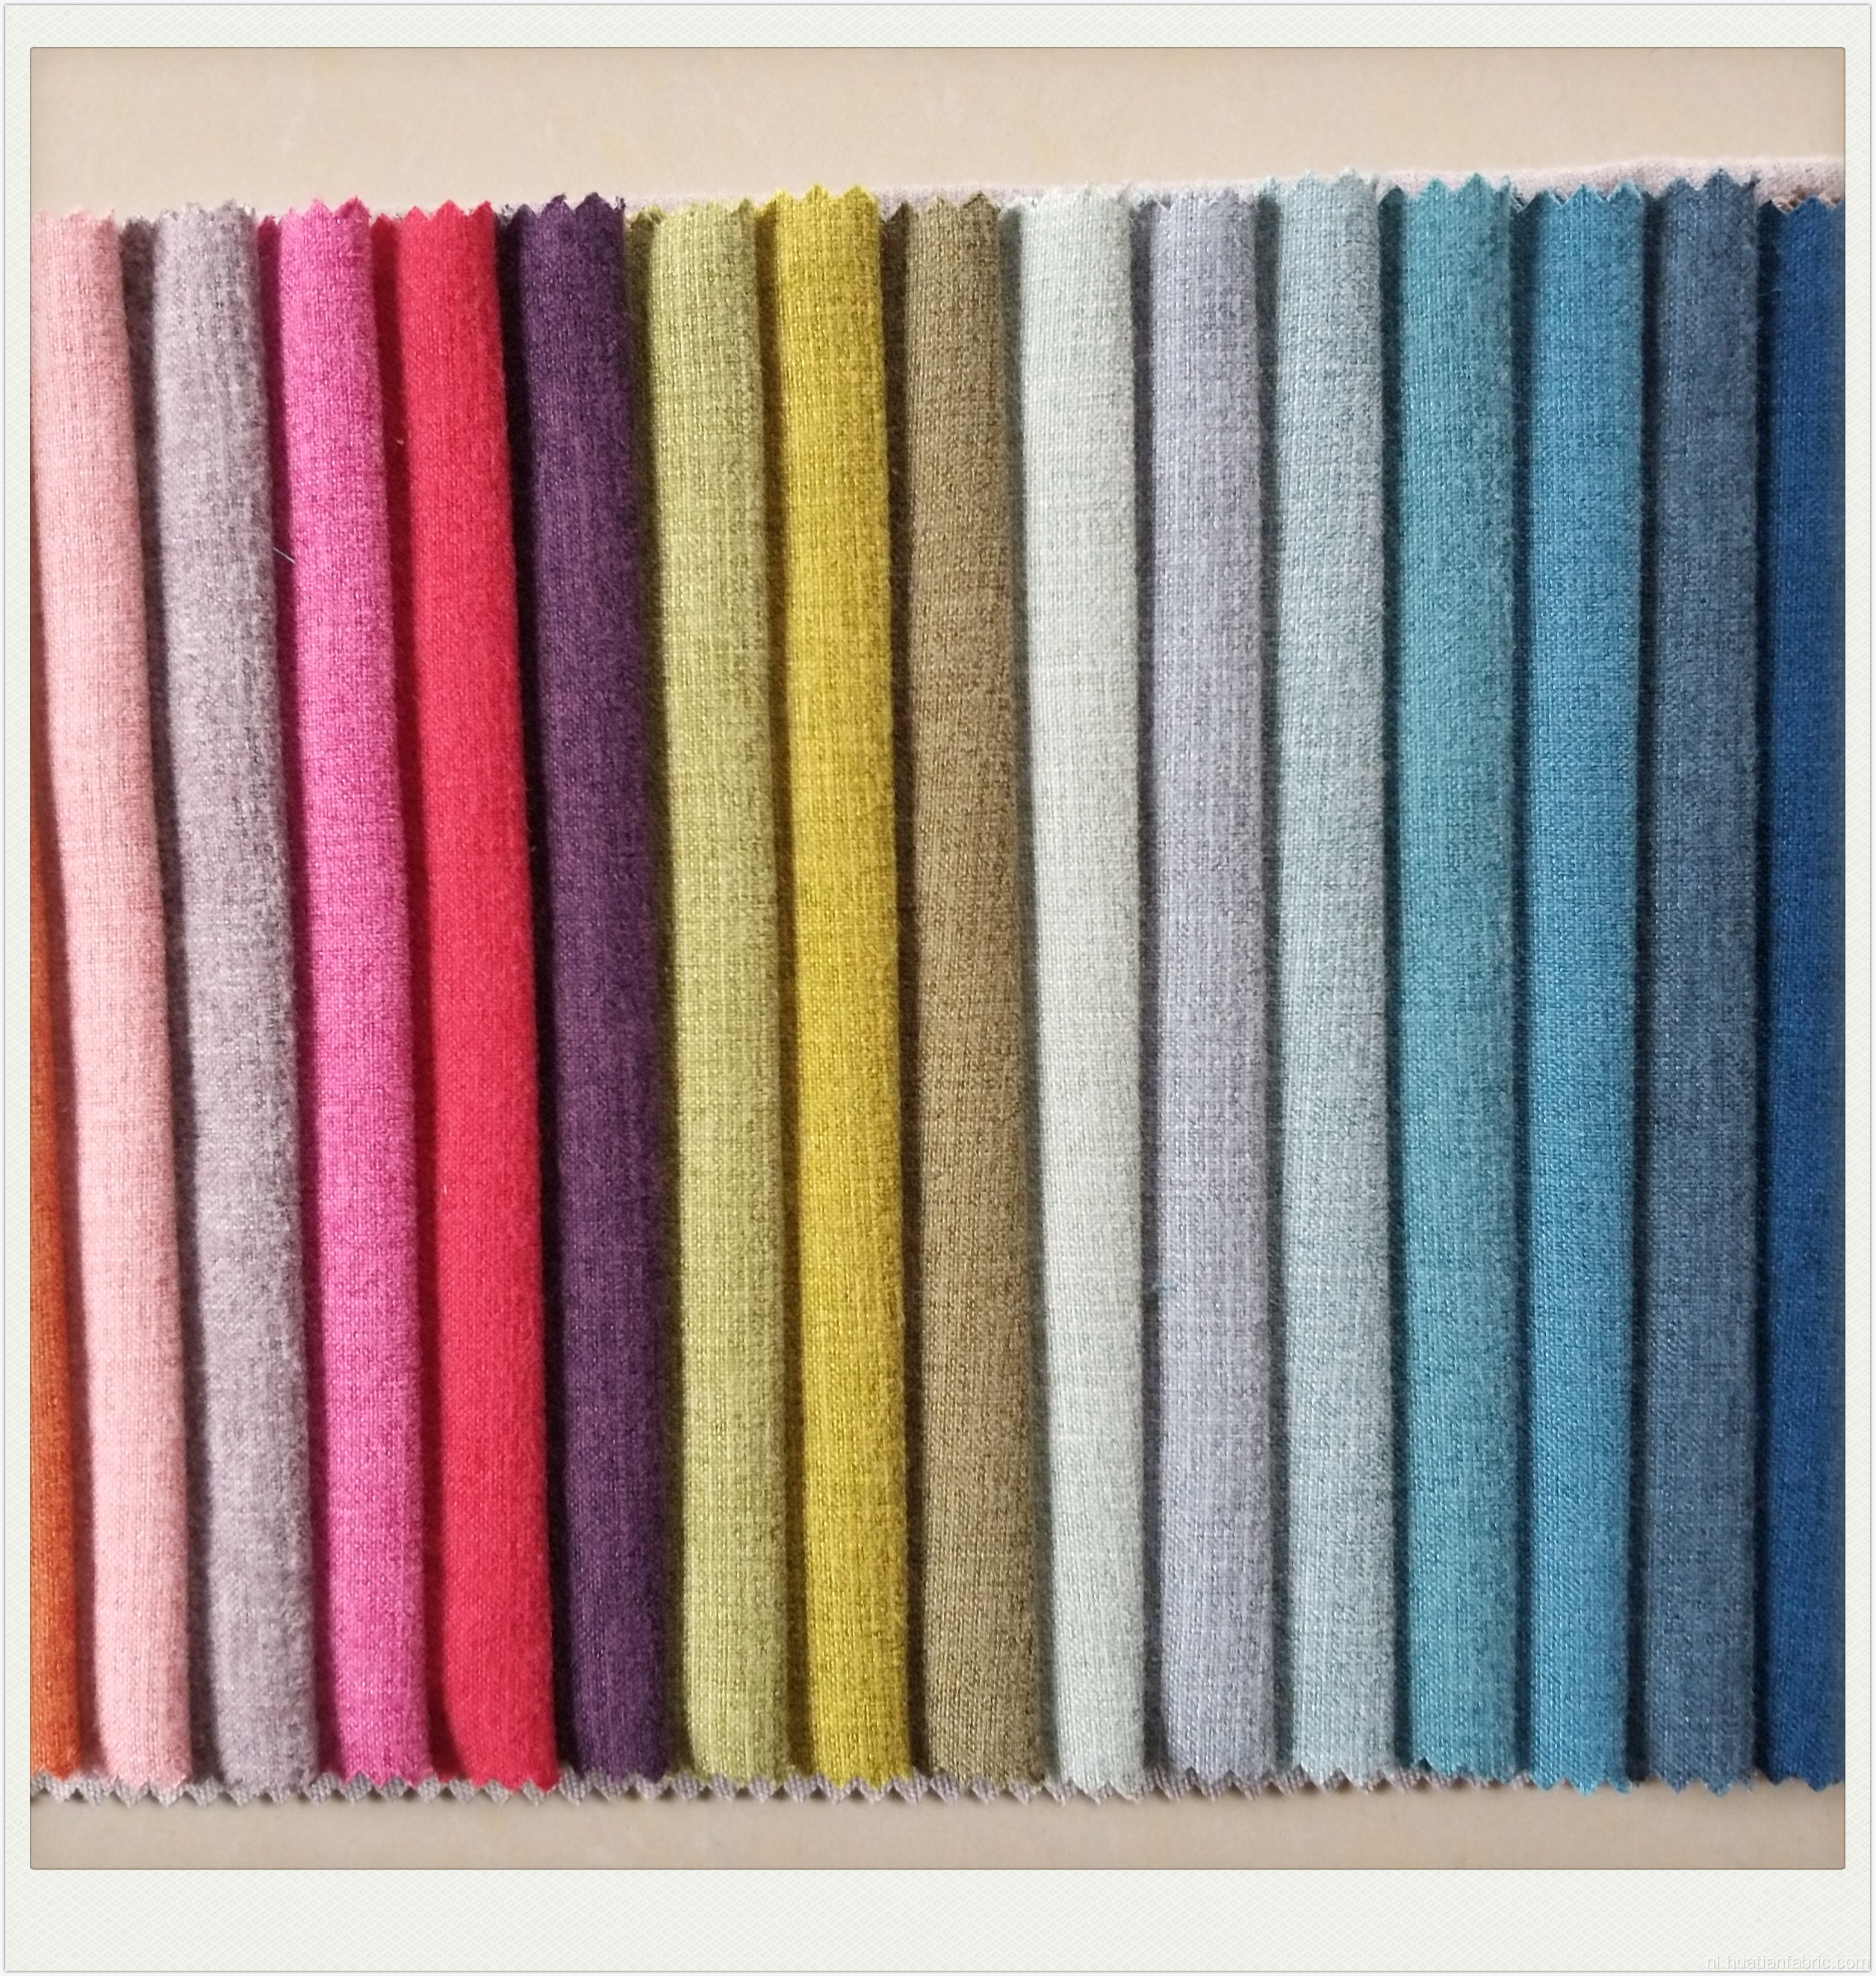 Kenaf Sofa-stof voor thuis textielbekledingsgebruik